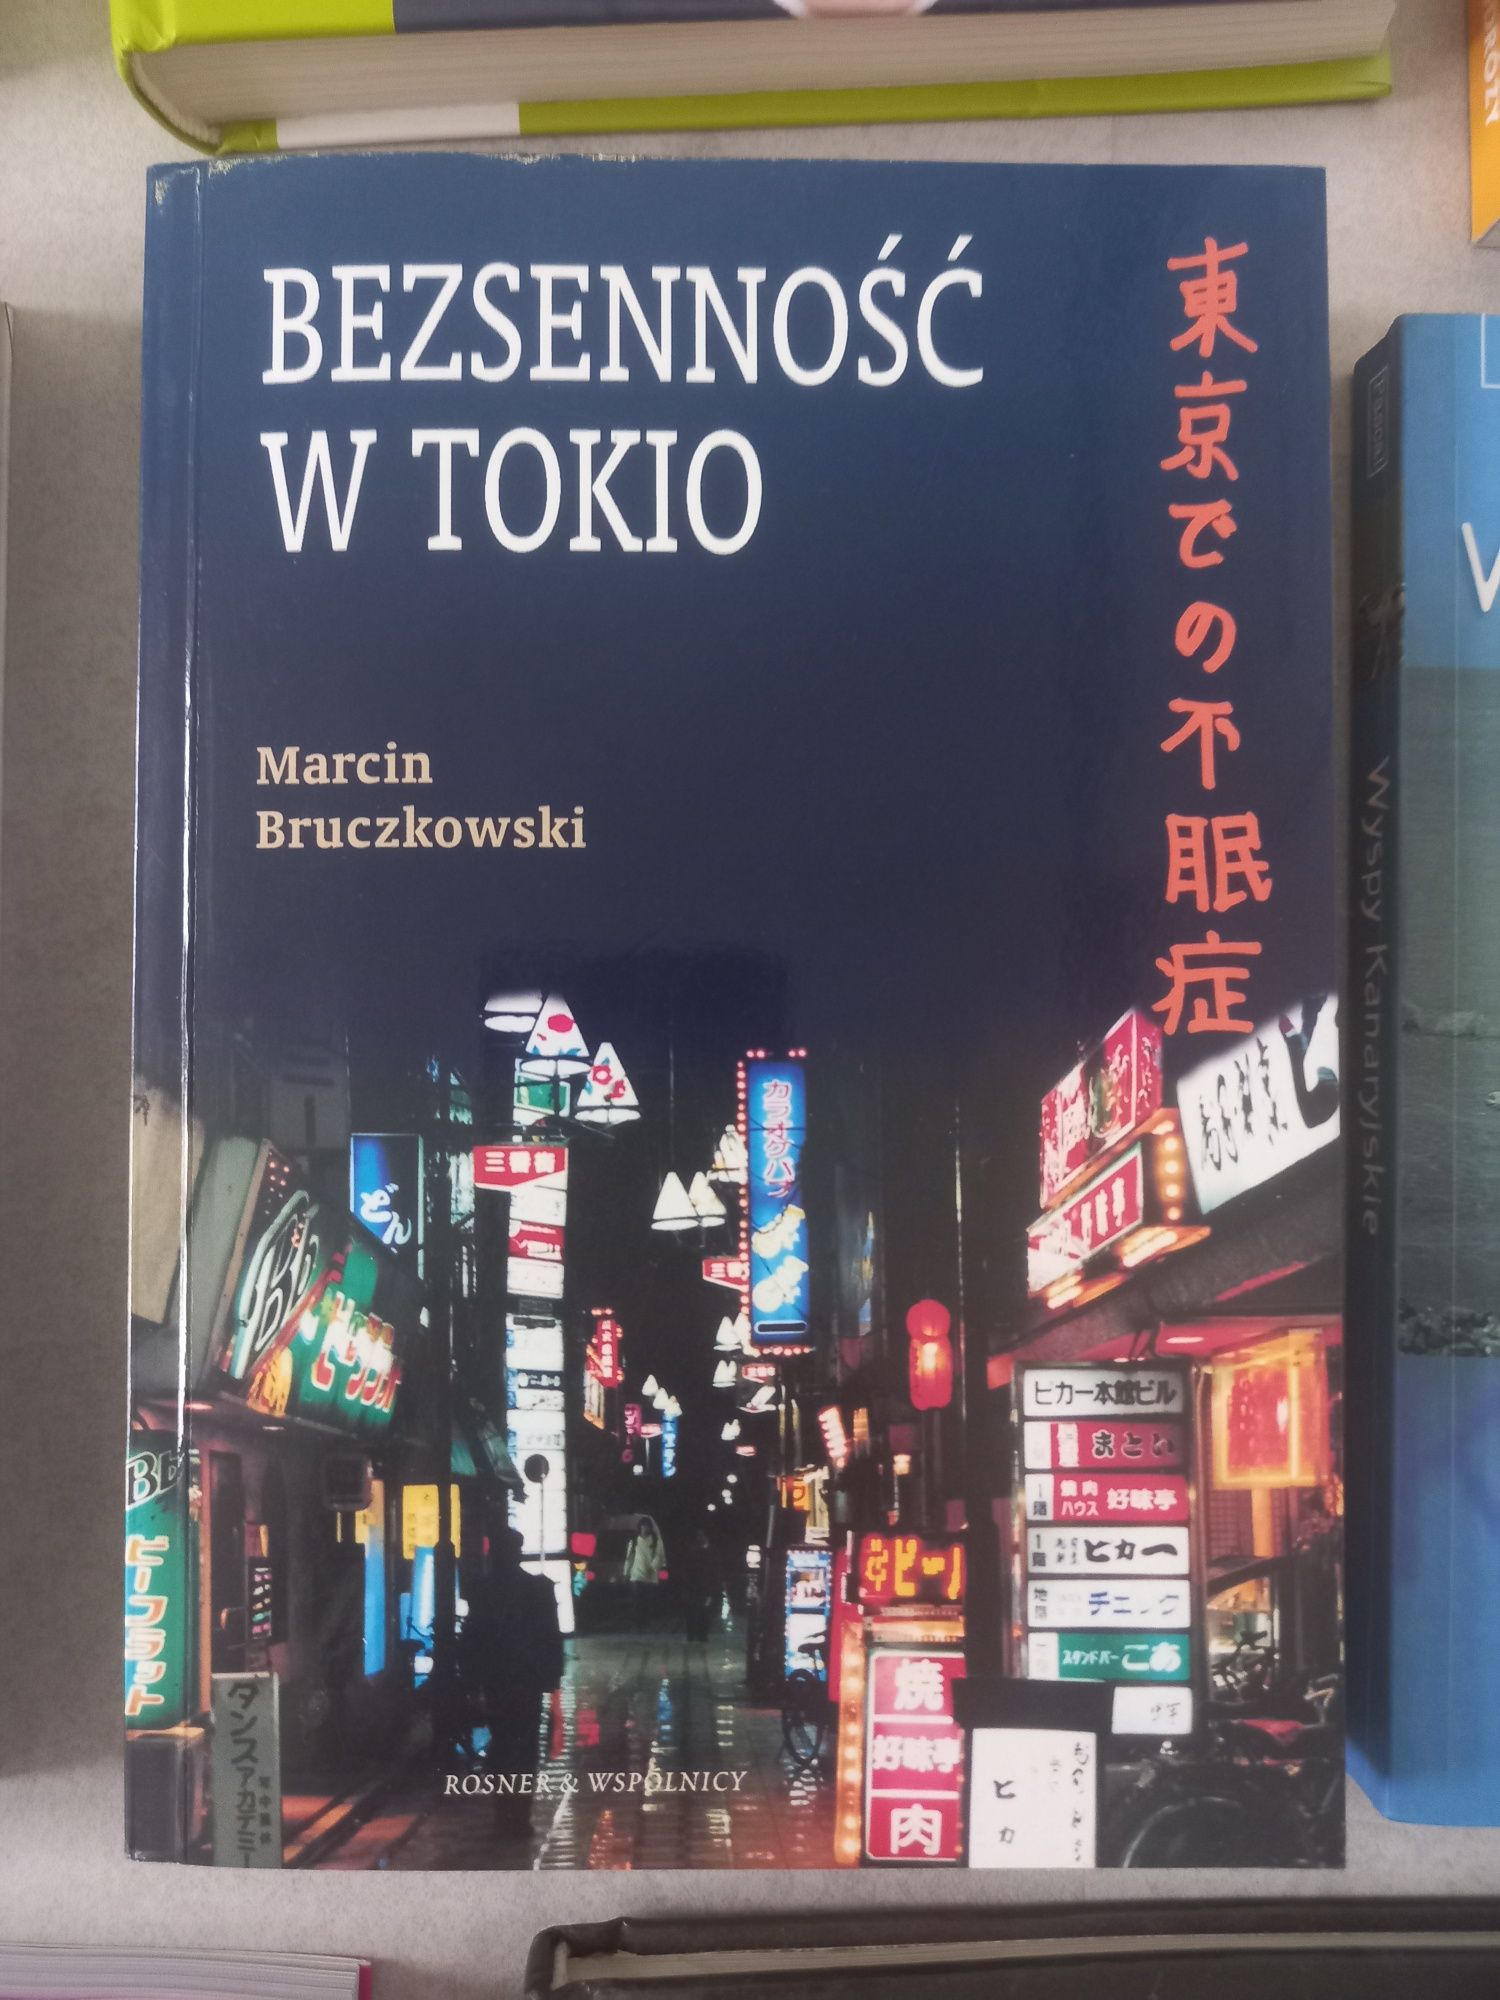 Książki podróżnicze 9 szt. Tokio Wyspy Kanaryjskie 52 Wyśnione Weekend